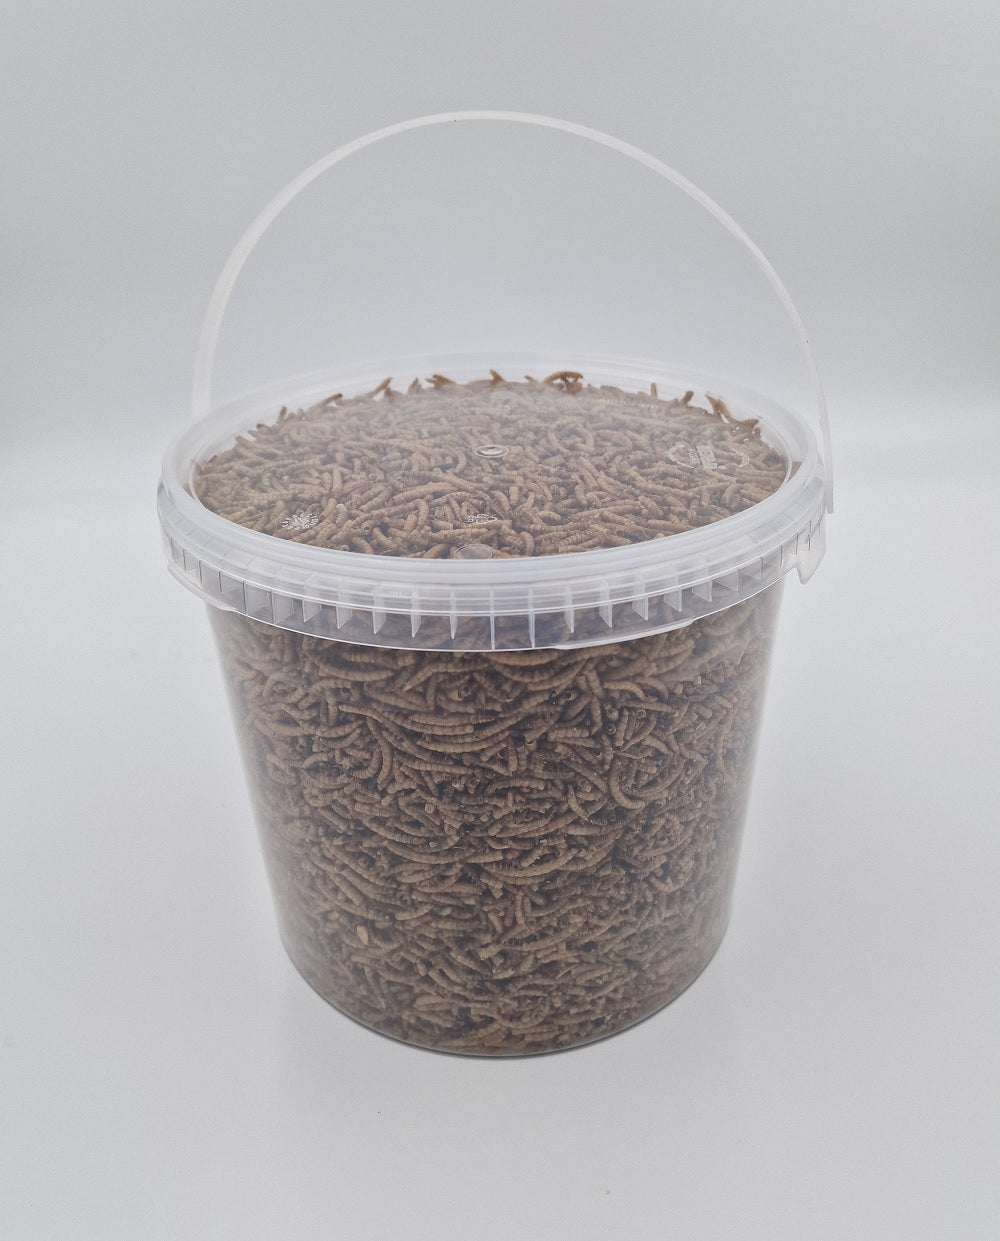 Mehlwürmer getrocknet Futtermittel für Geflügel Nager Reptilien Wildtiere 110 Gramm Eimer